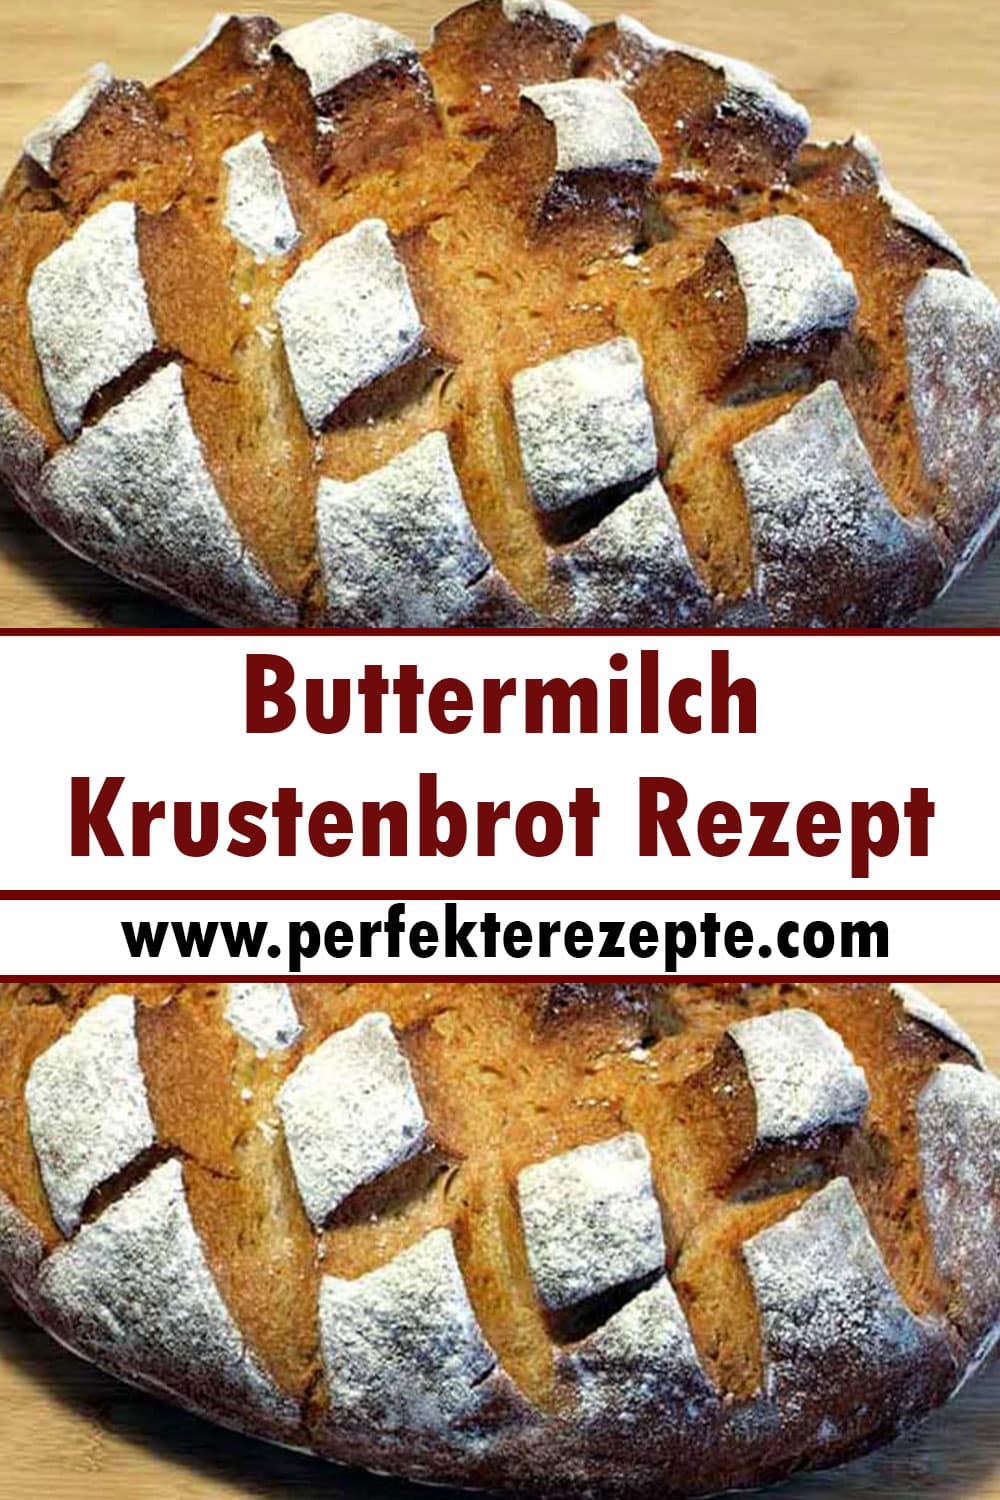 Buttermilch-Krustenbrot Rezept